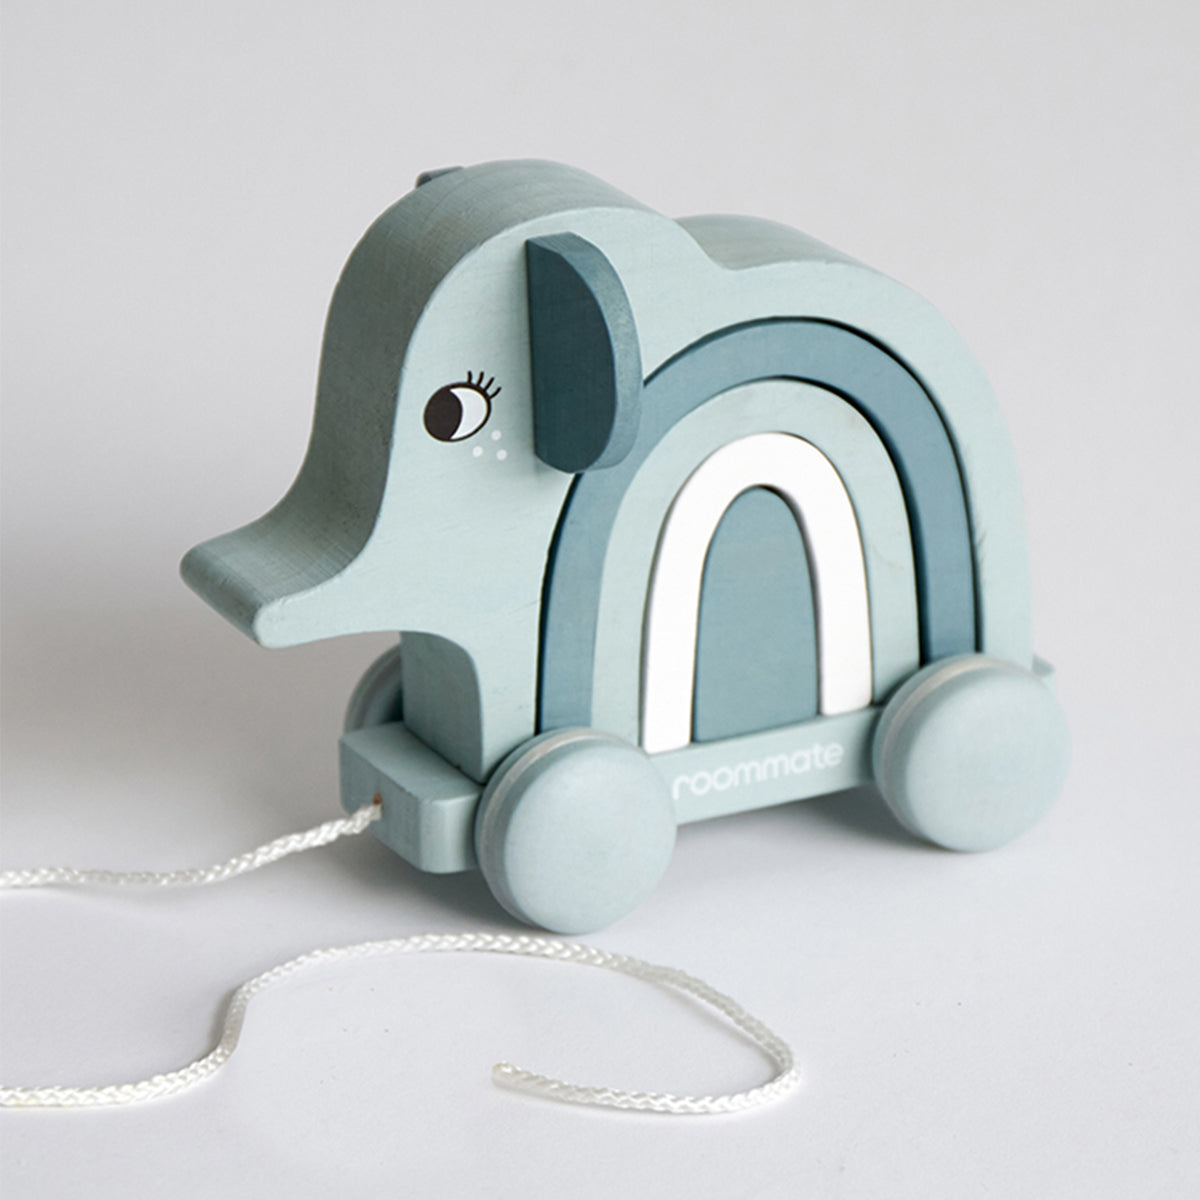 Stapelspeeltje olifant van Roommate zorgt voor veel speelplezier bij jouw kindje. Het is een stapeldier en trekdier in één. Dit speelgoed draagt bij aan de motorische ontwikkeling van jouw kindje. VanZus